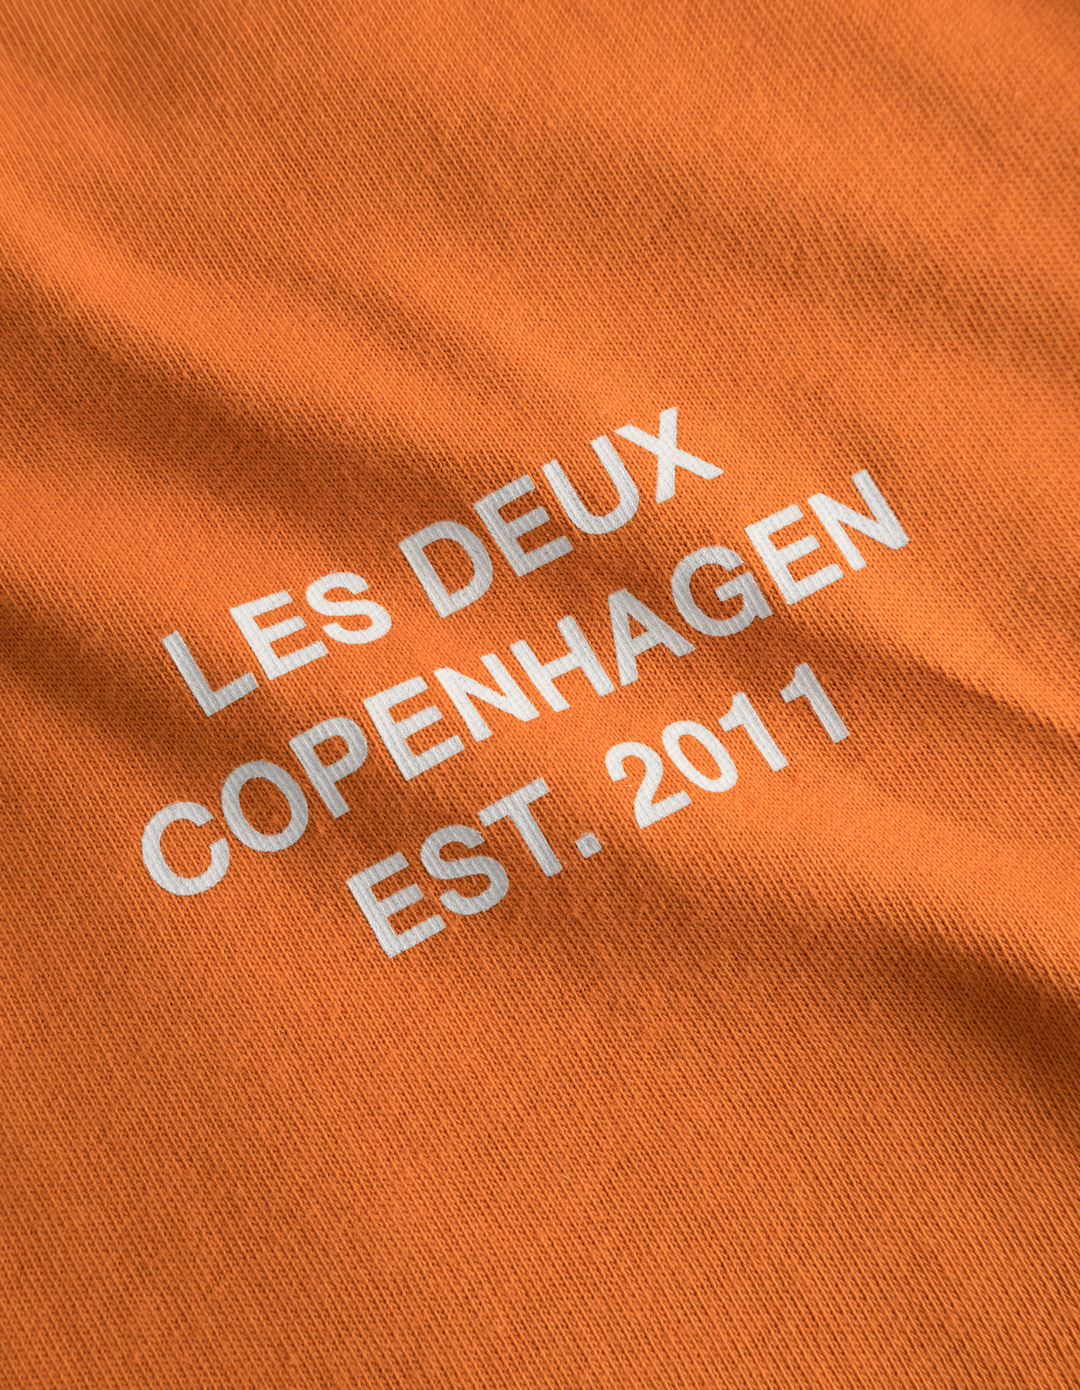 Copenhagen 2011 T-shirt